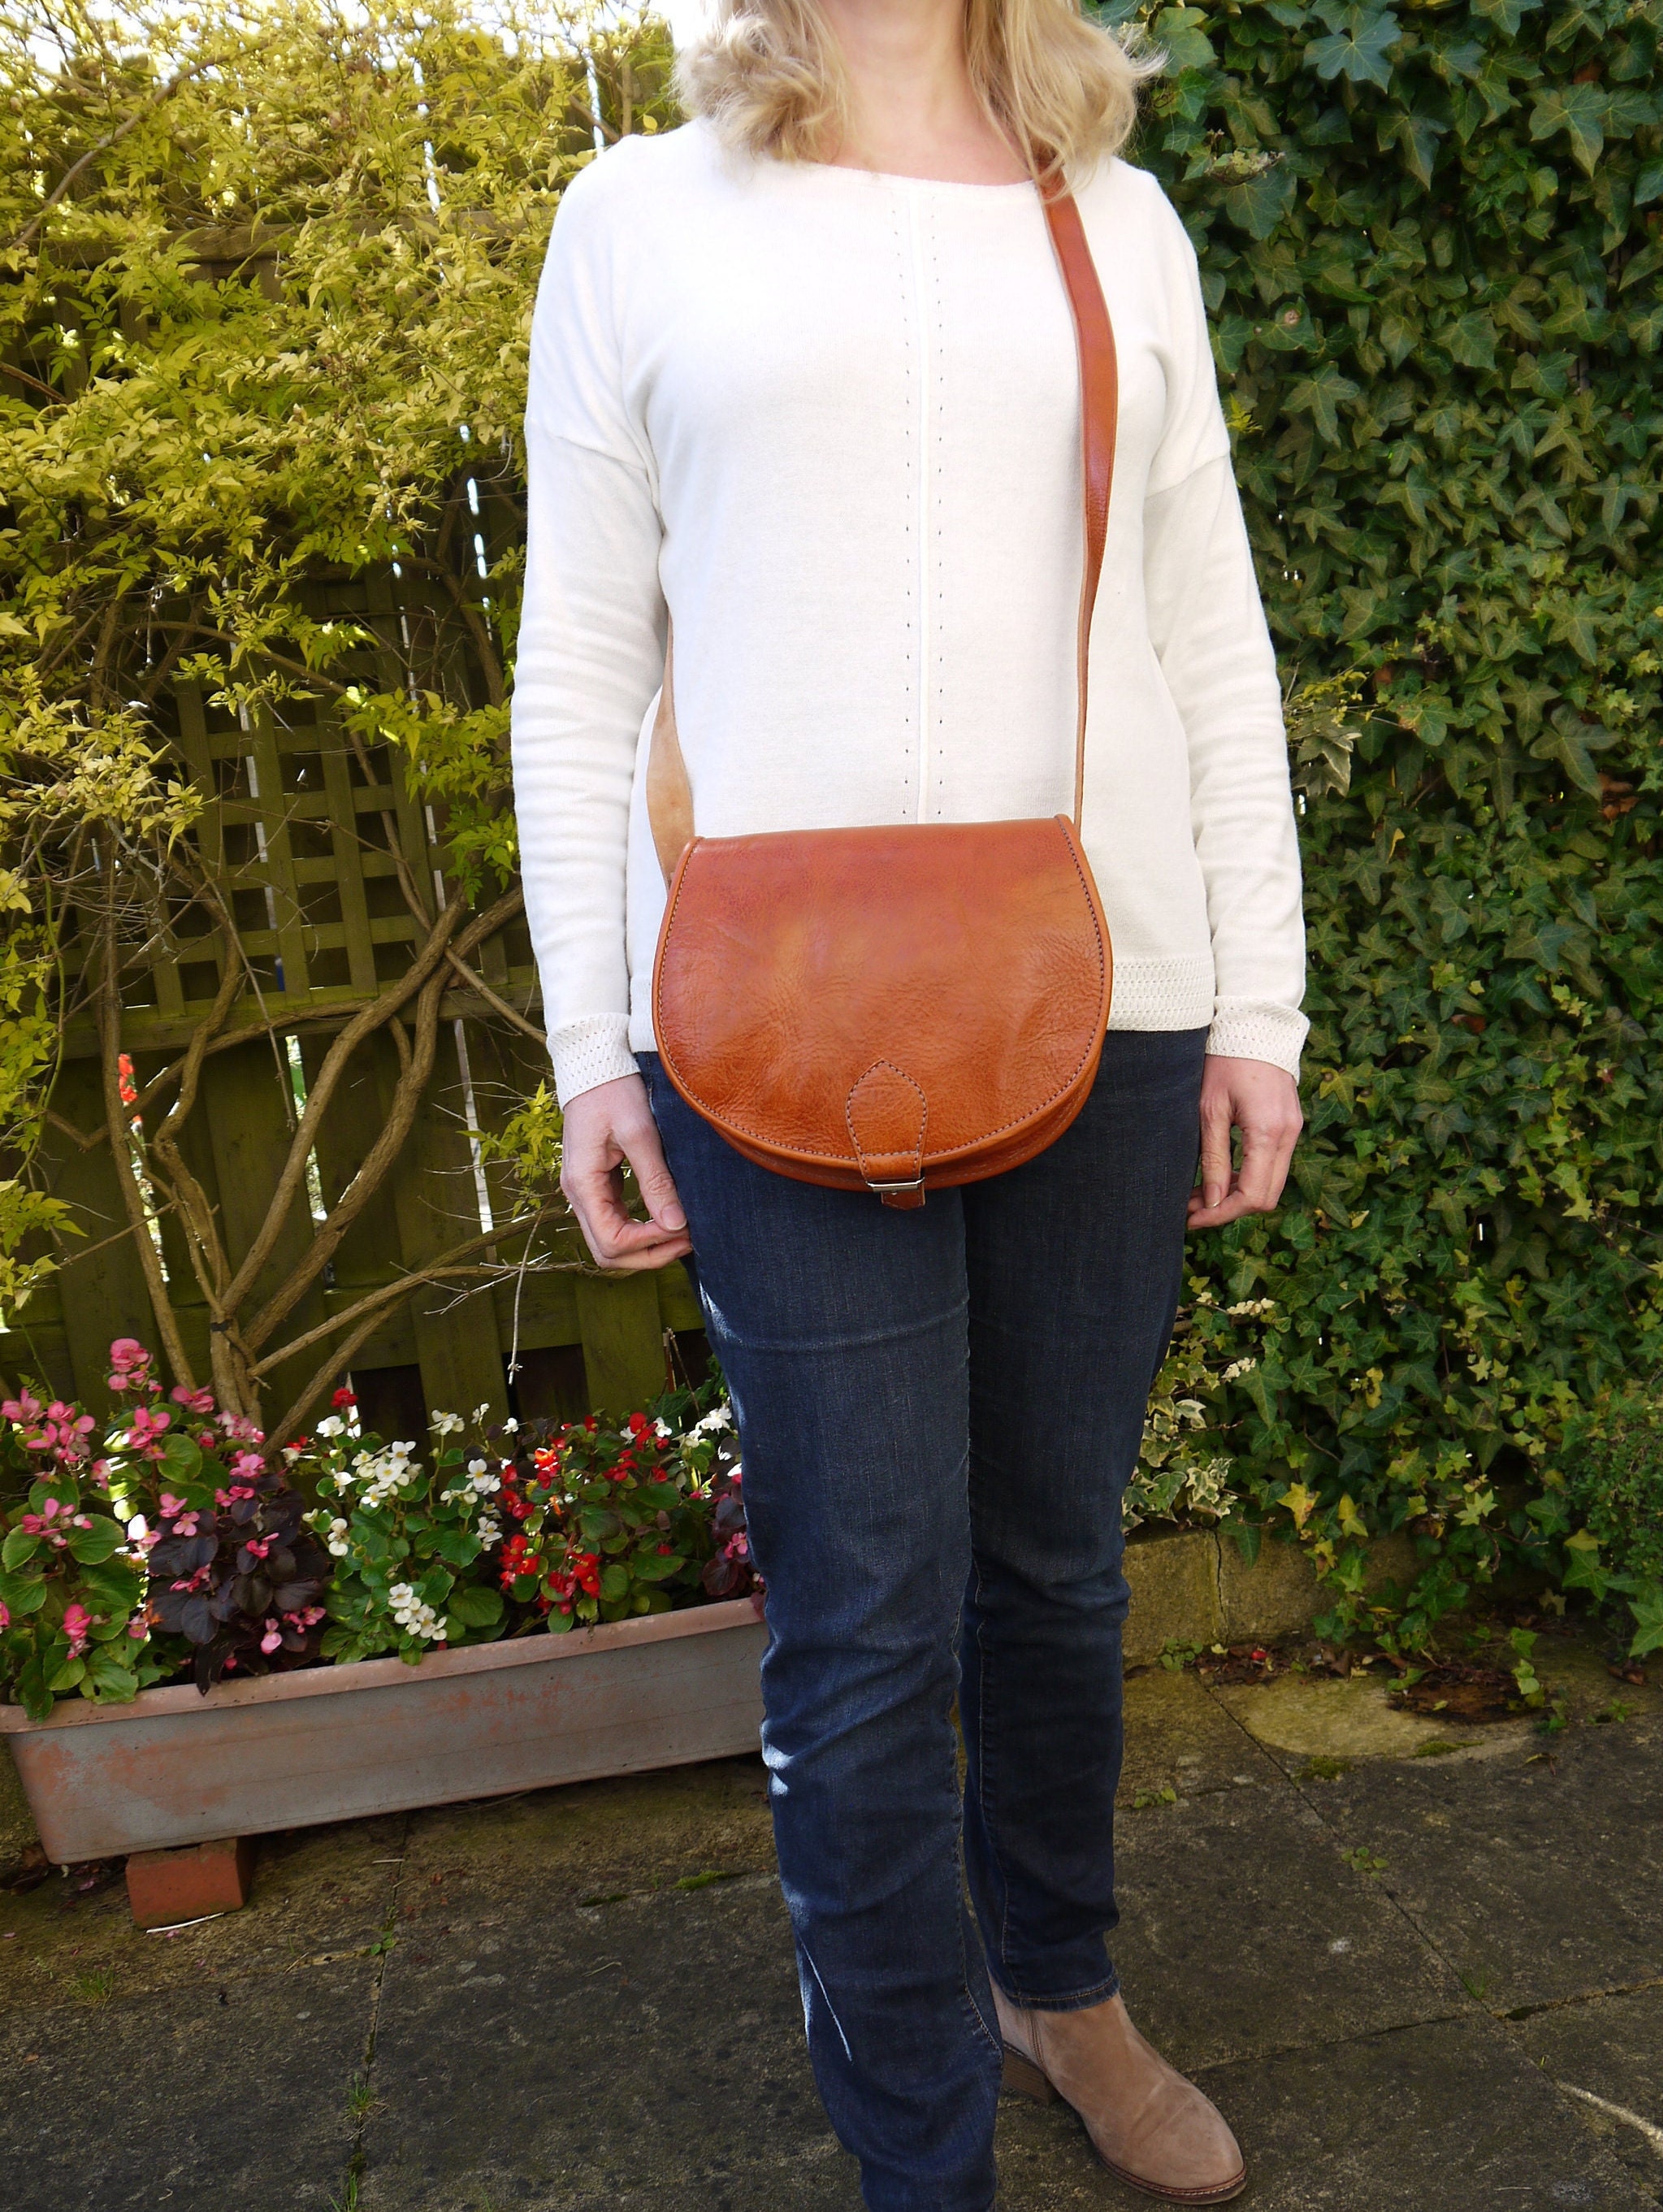 red leather saddle bag handbag — MUSEUM OUTLETS